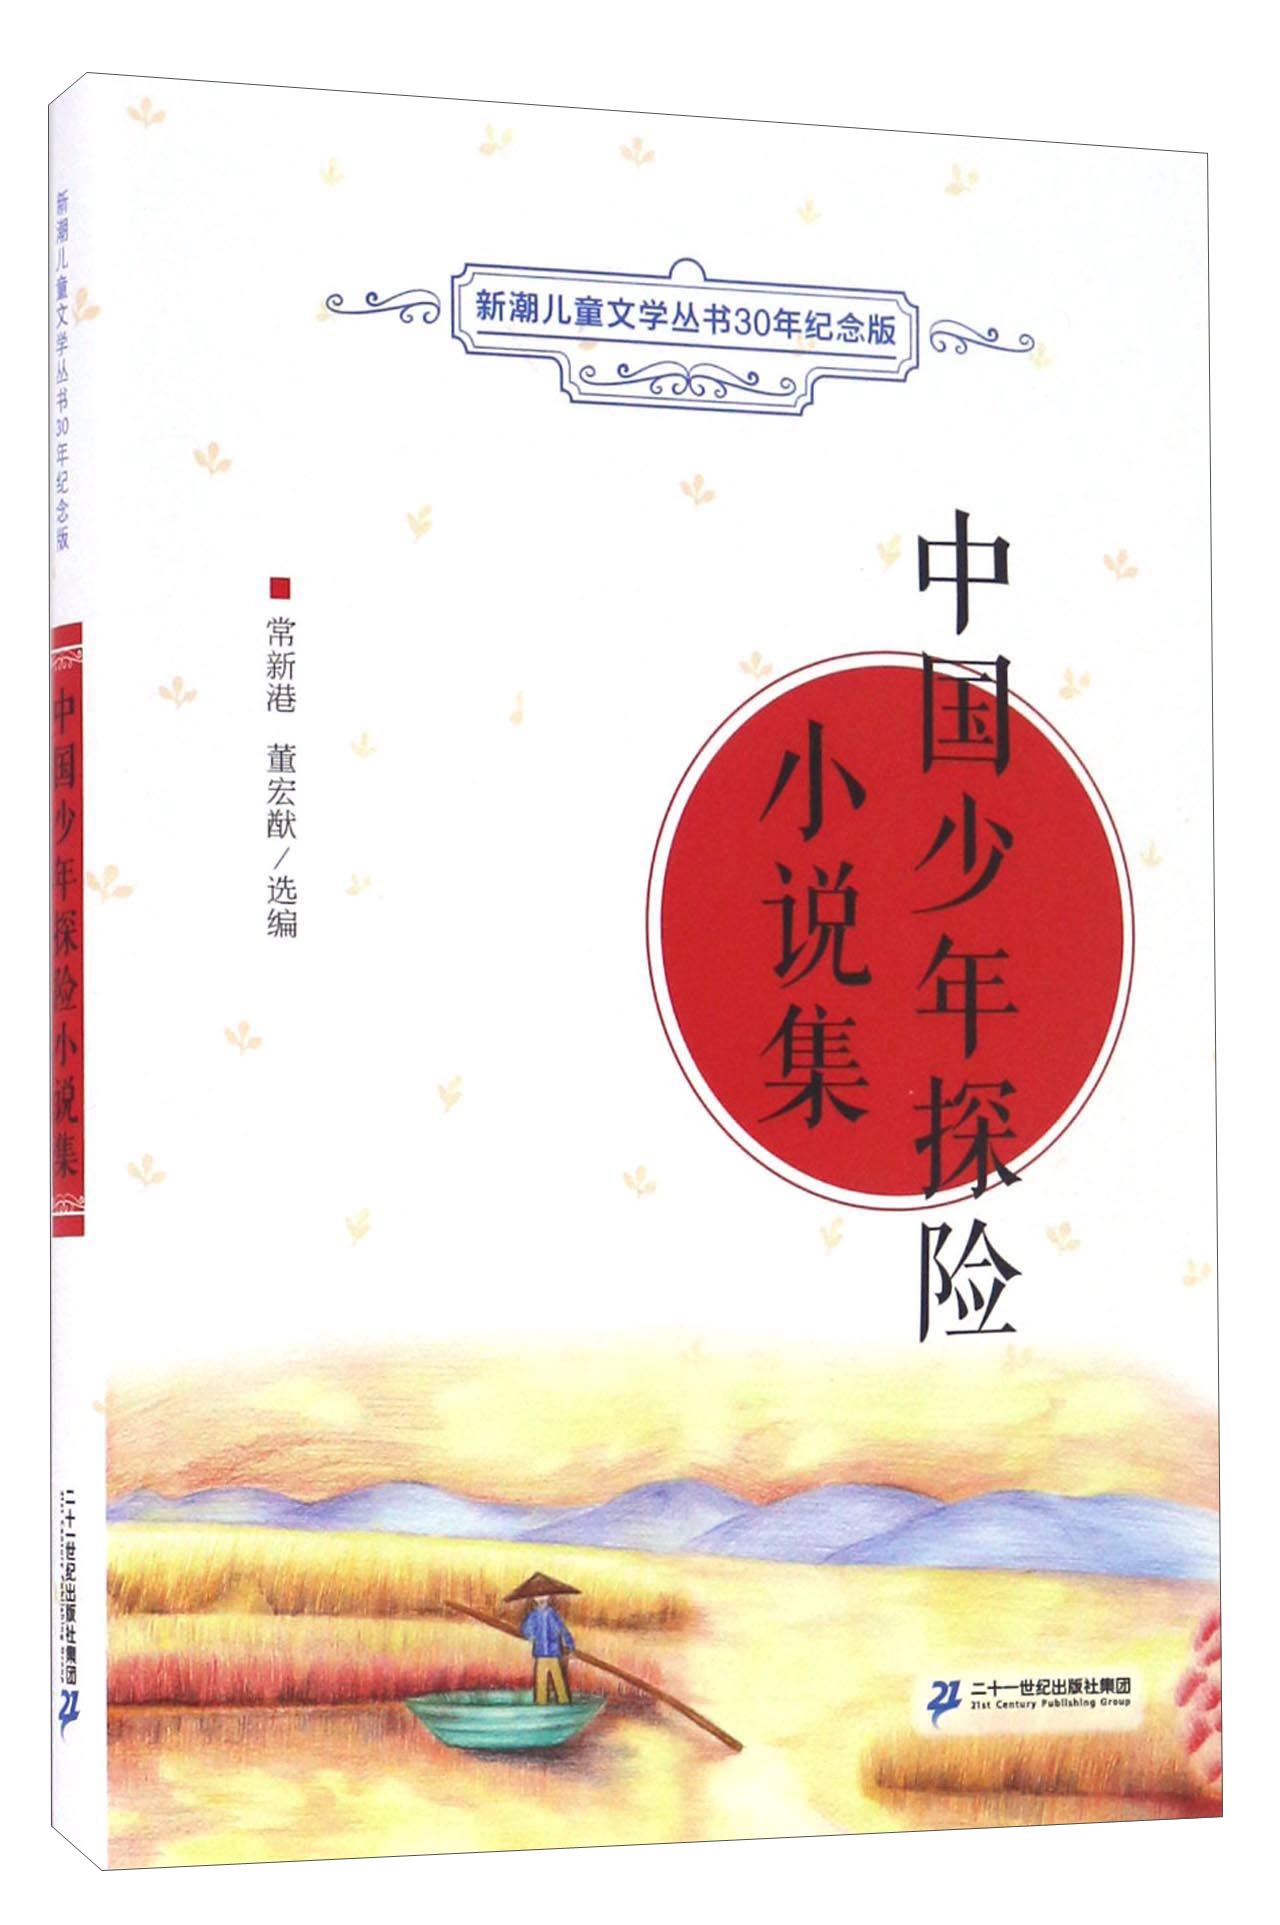 中国少年探险小说集怎么样,好用不?